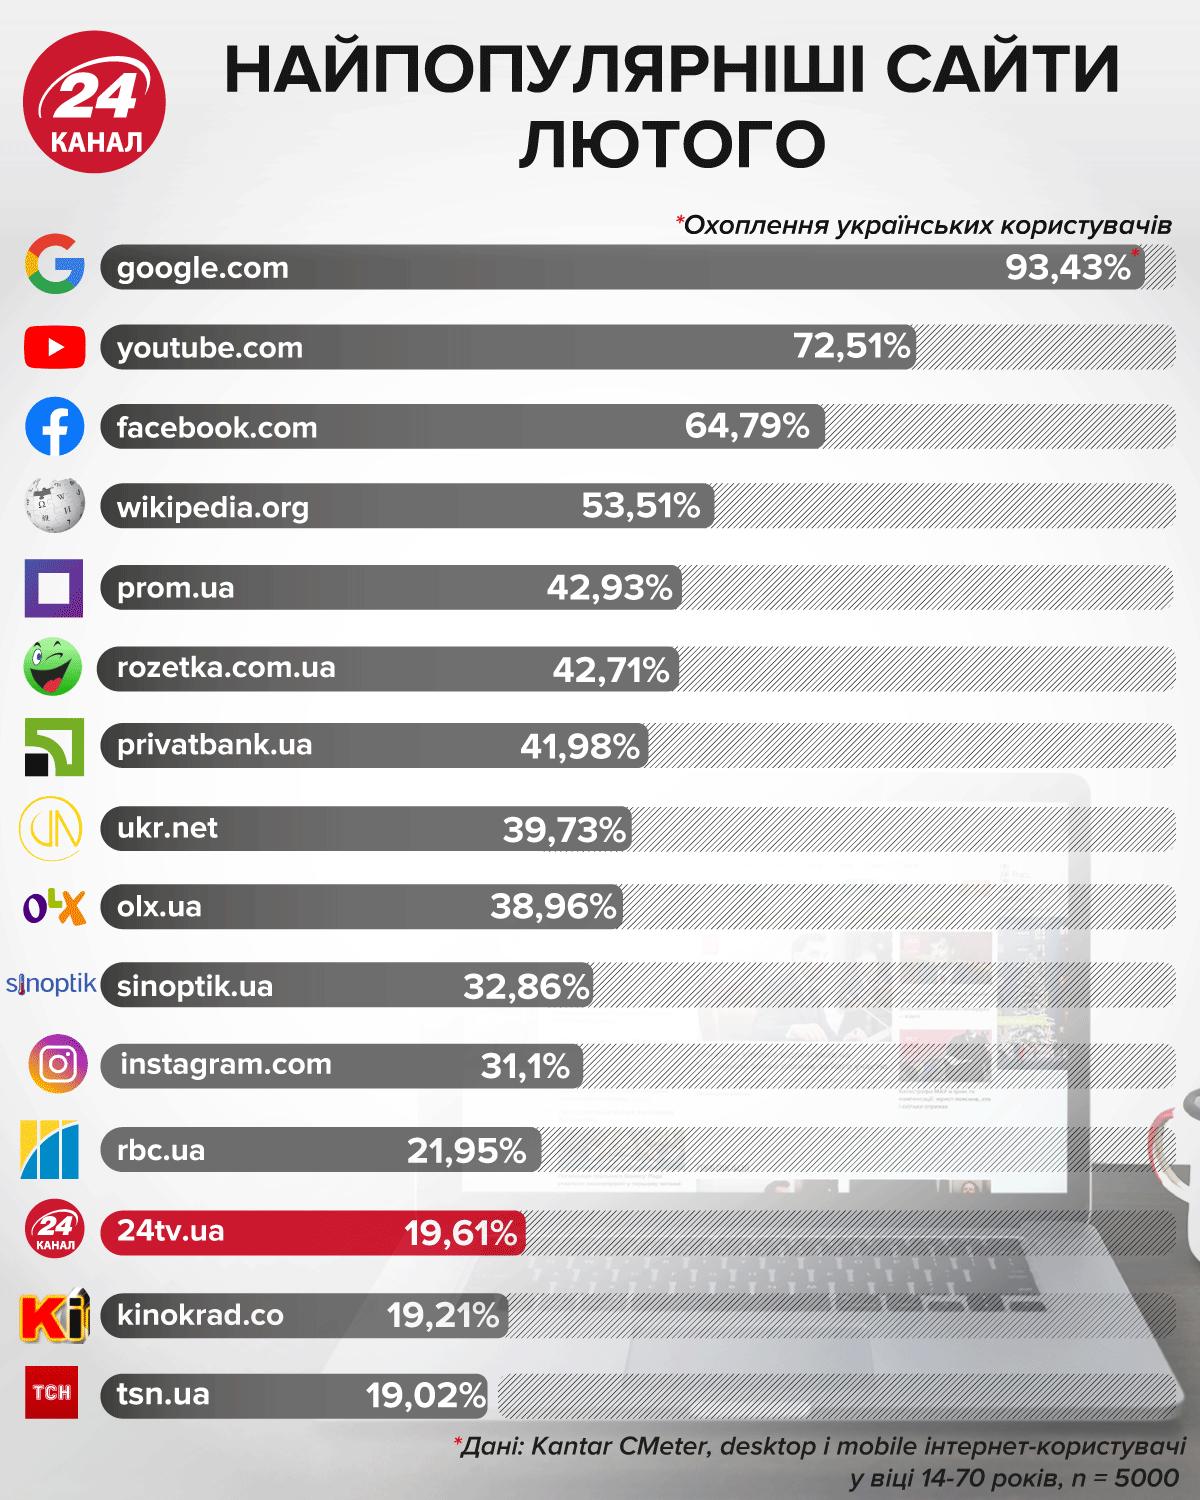 Найпопулярніші сайти